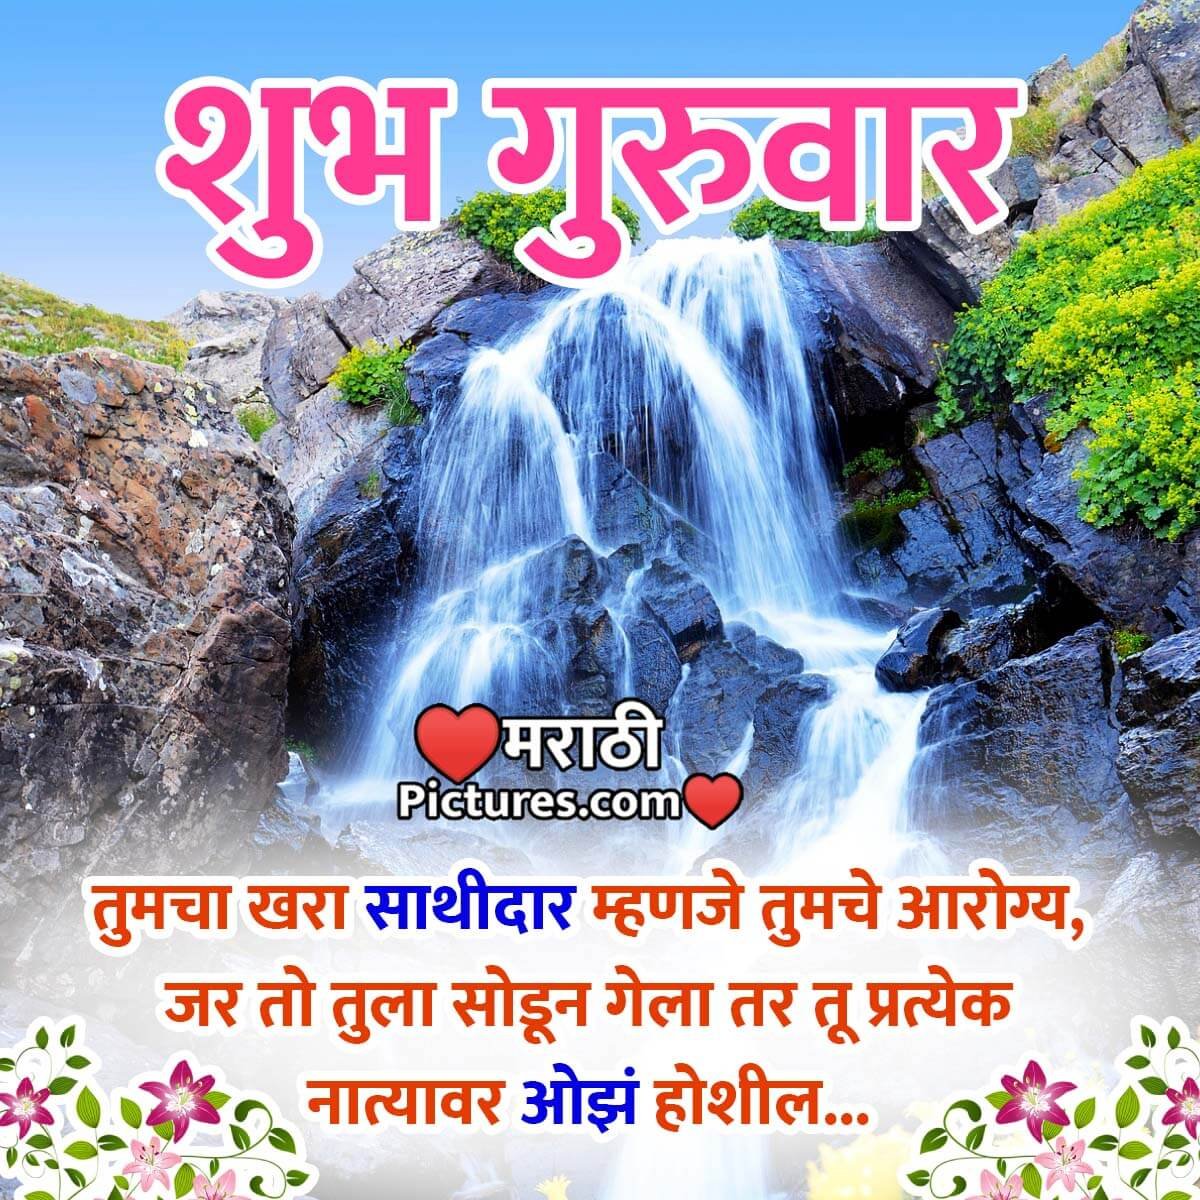 Thursday Marathi Message Image